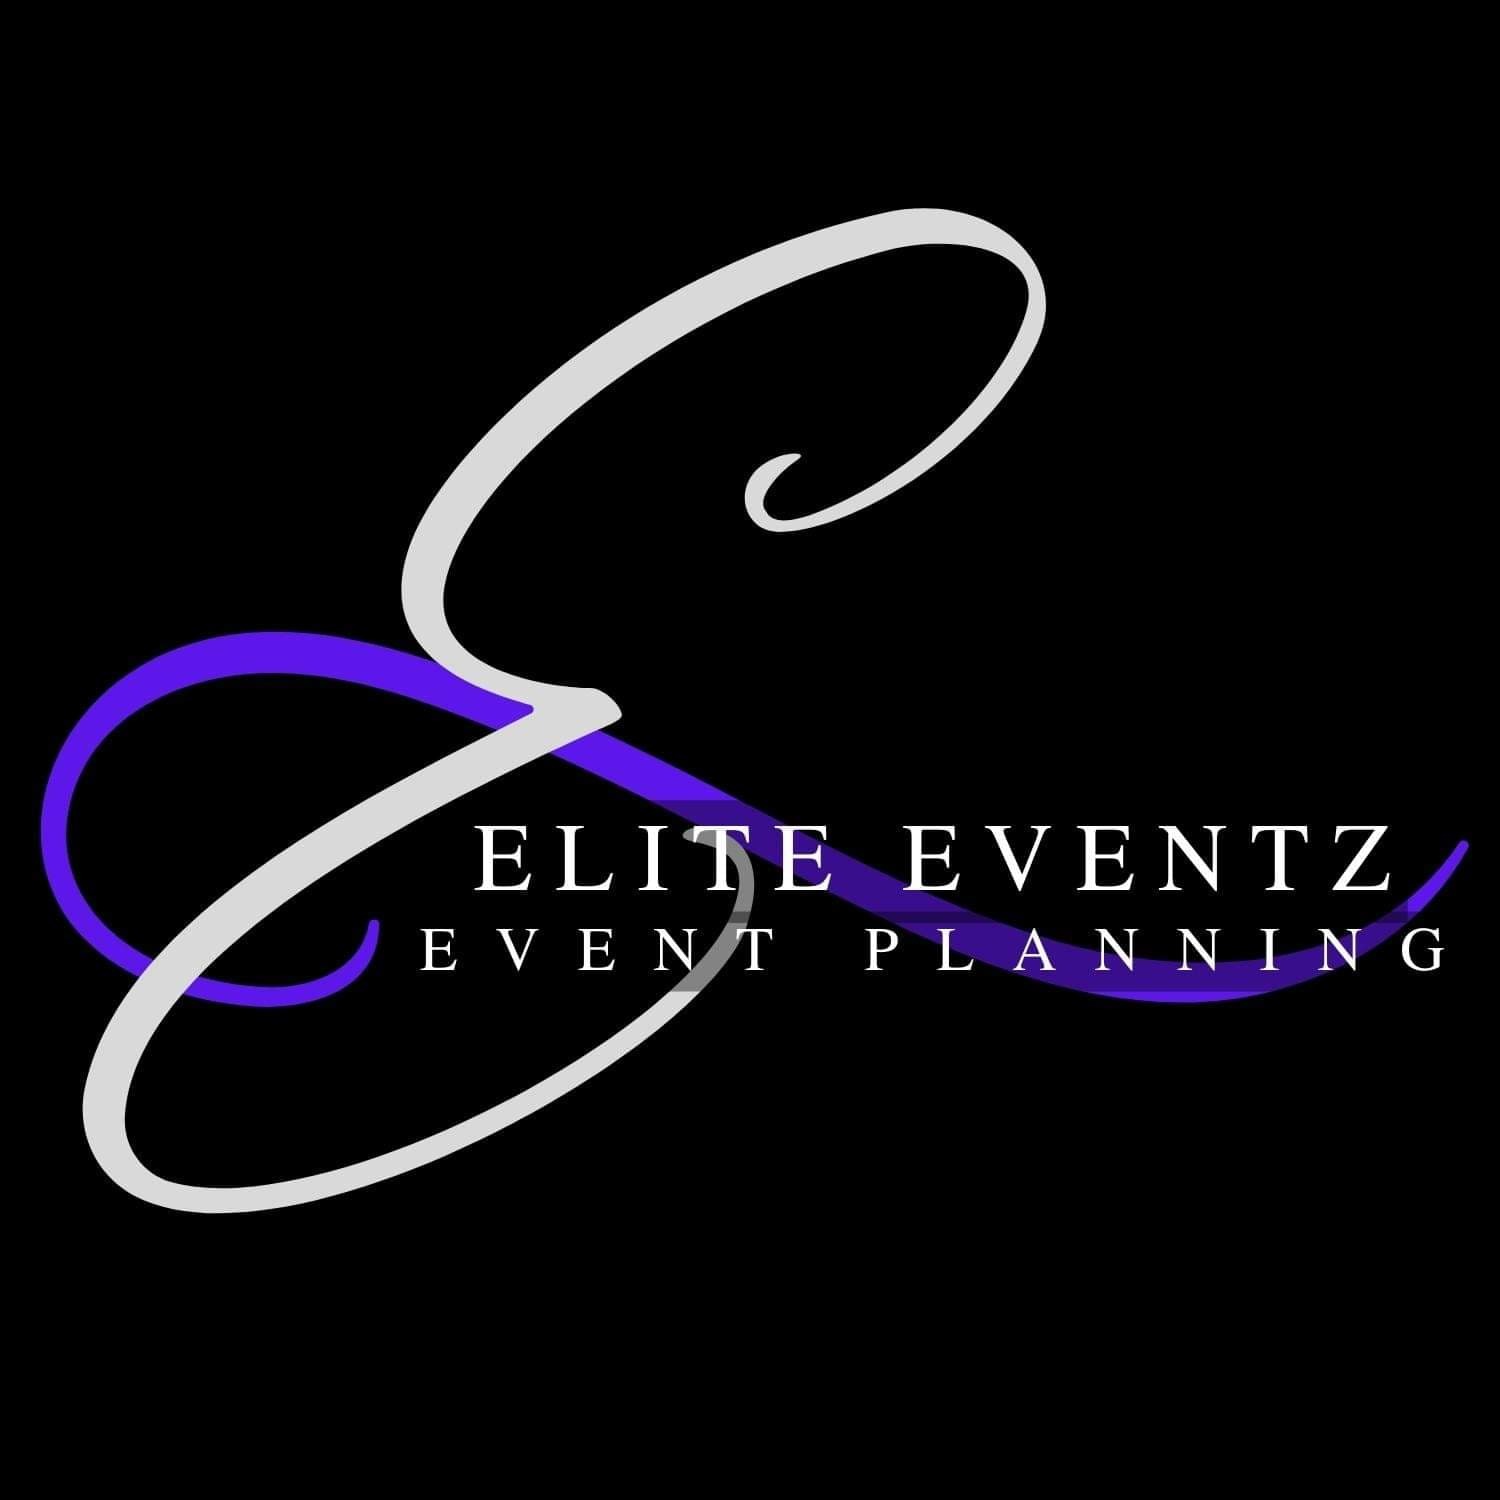 Elite Eventz Consulting 